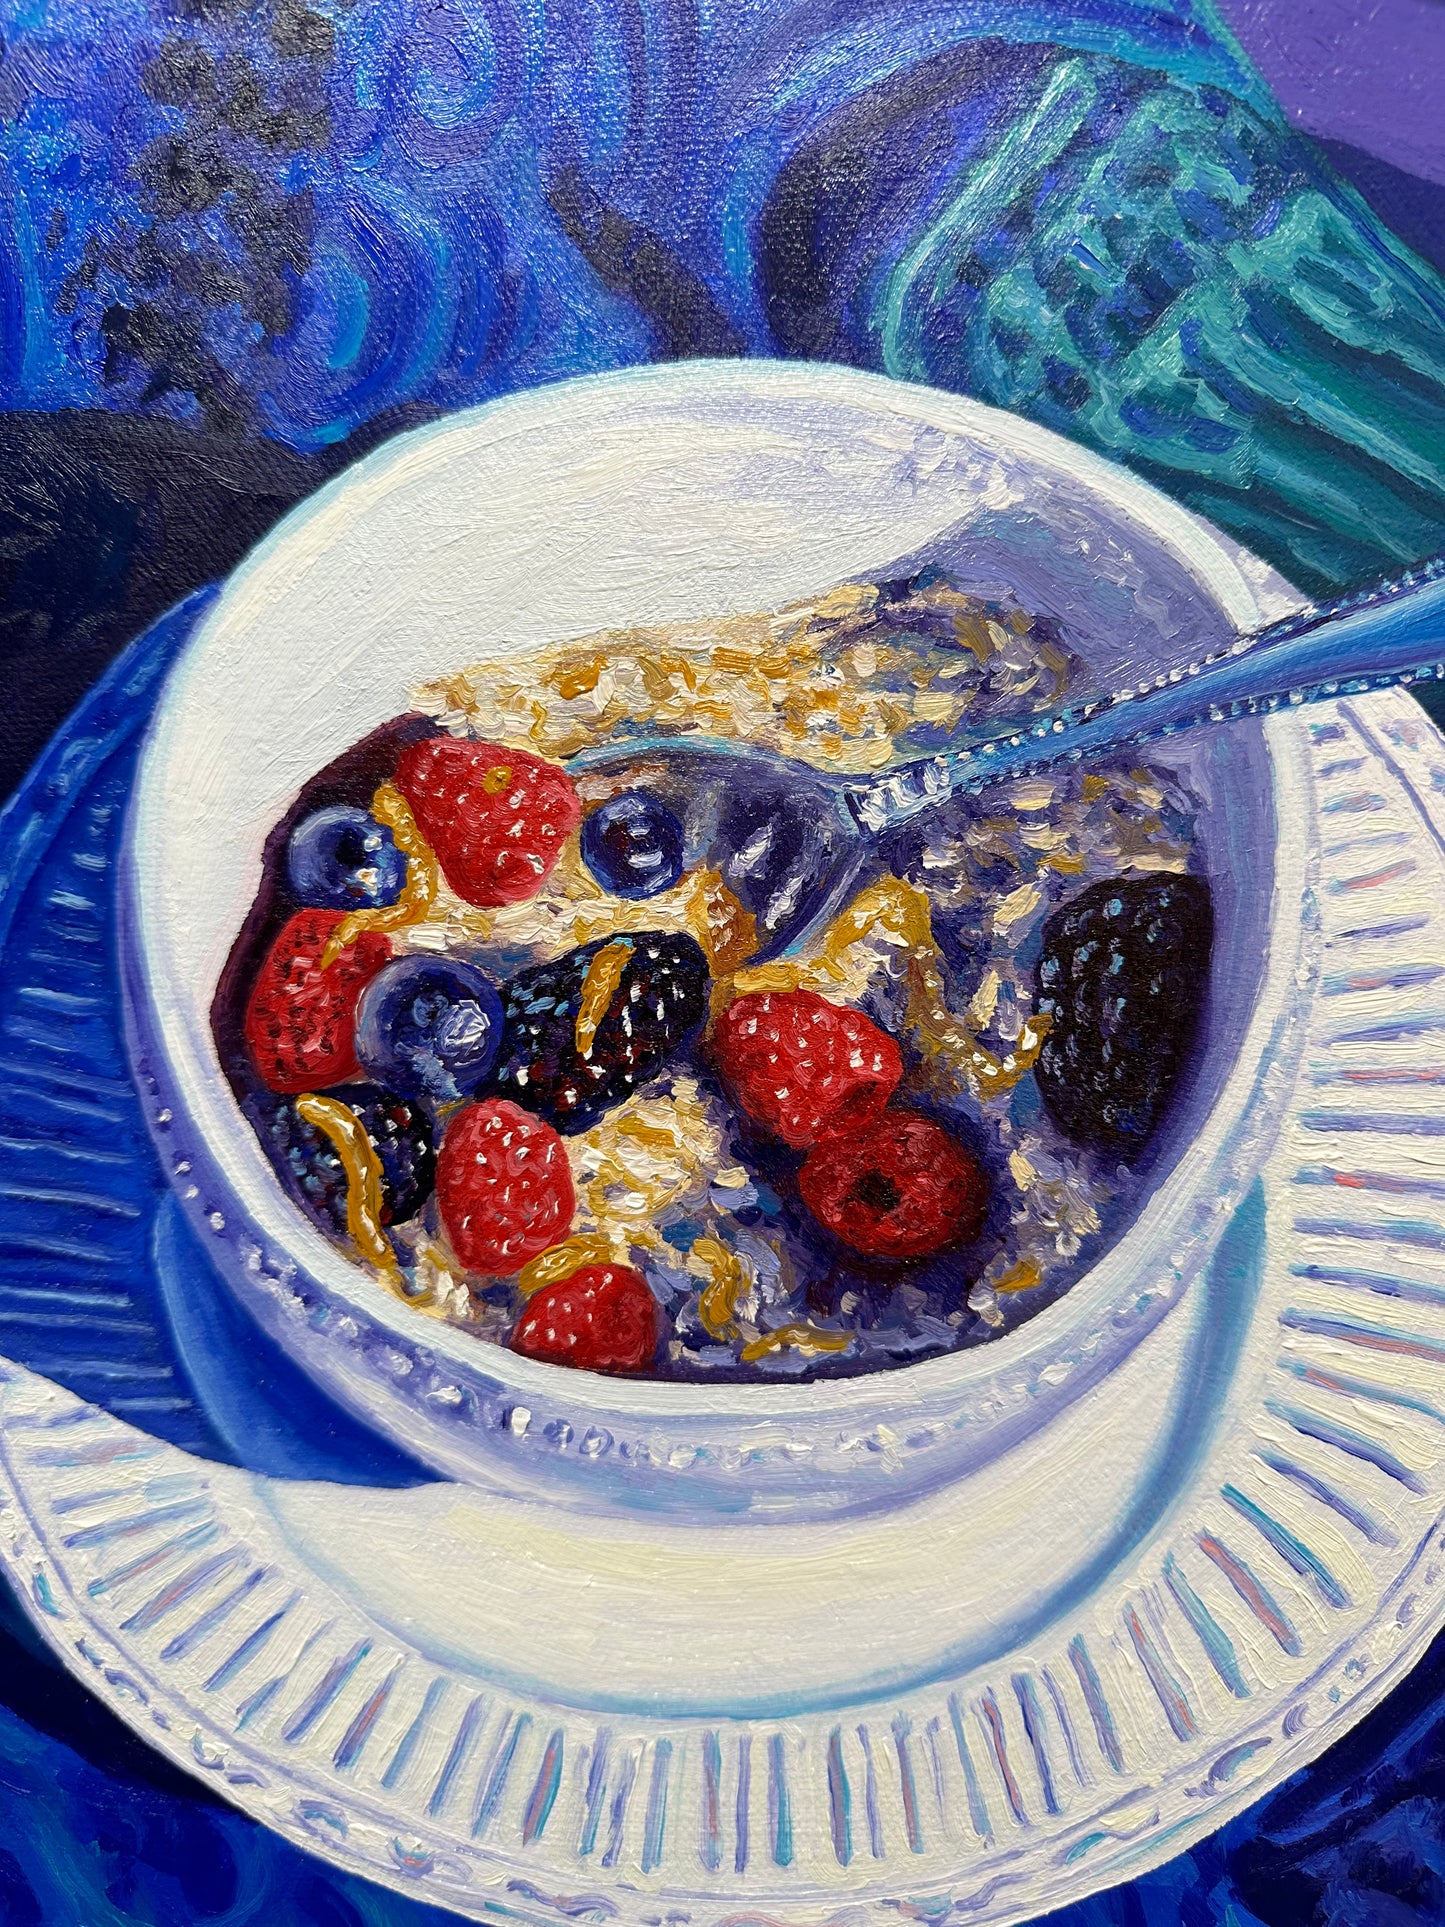 Oatmeal Breakfast - 20x20 - oil on canvas